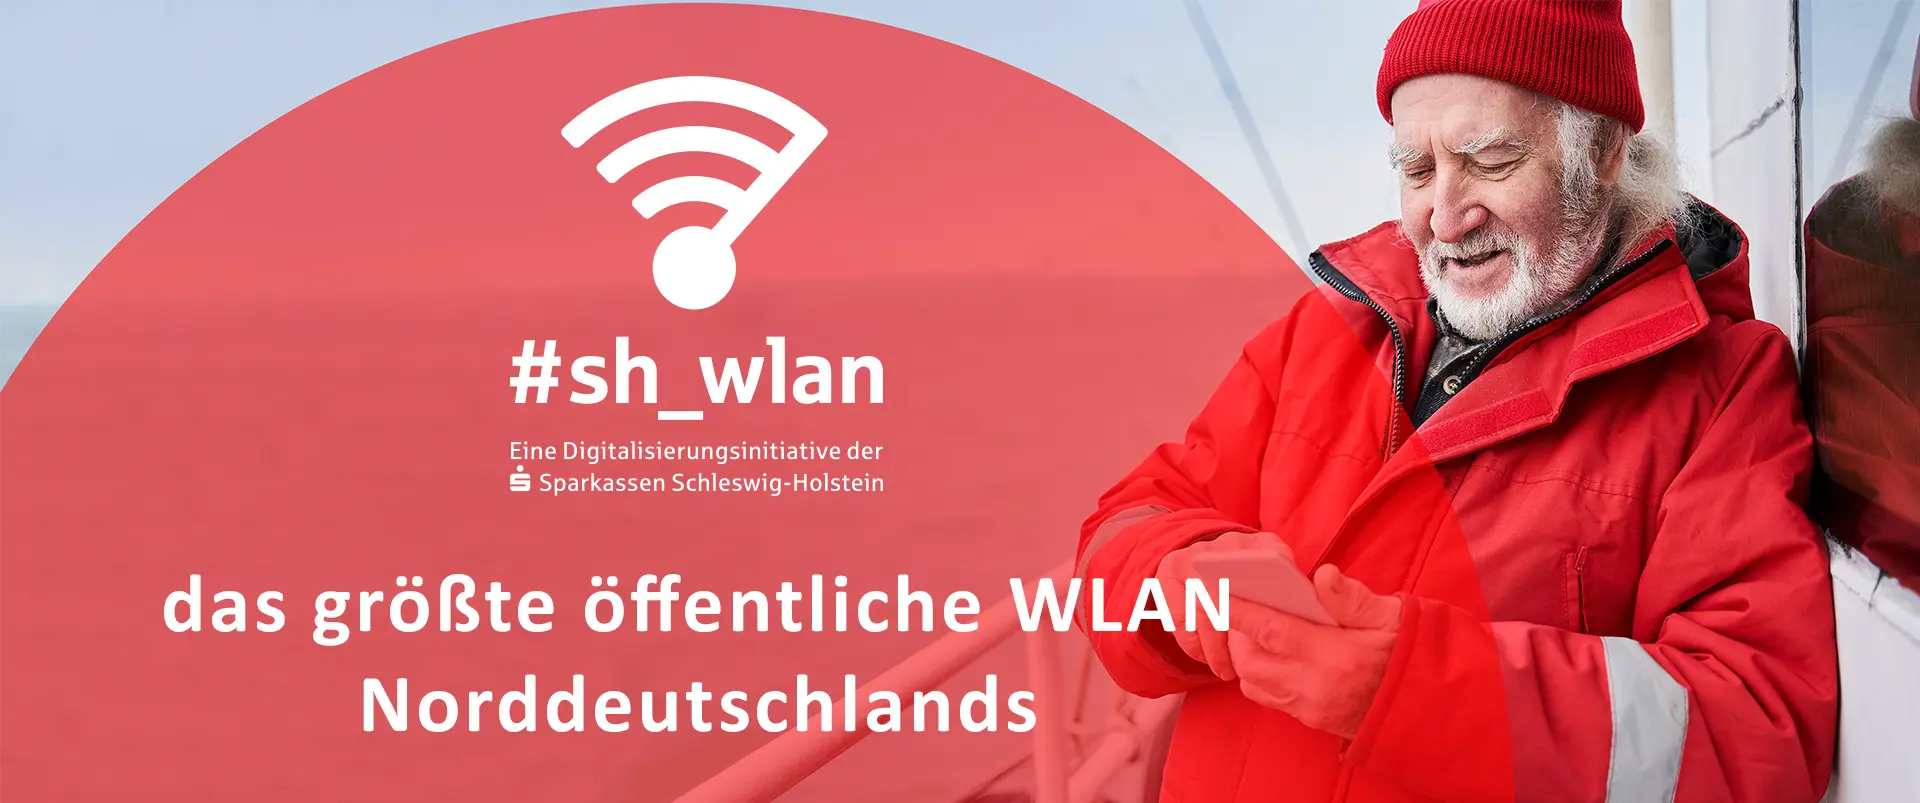 sh_wlan - öffentliches WLAN